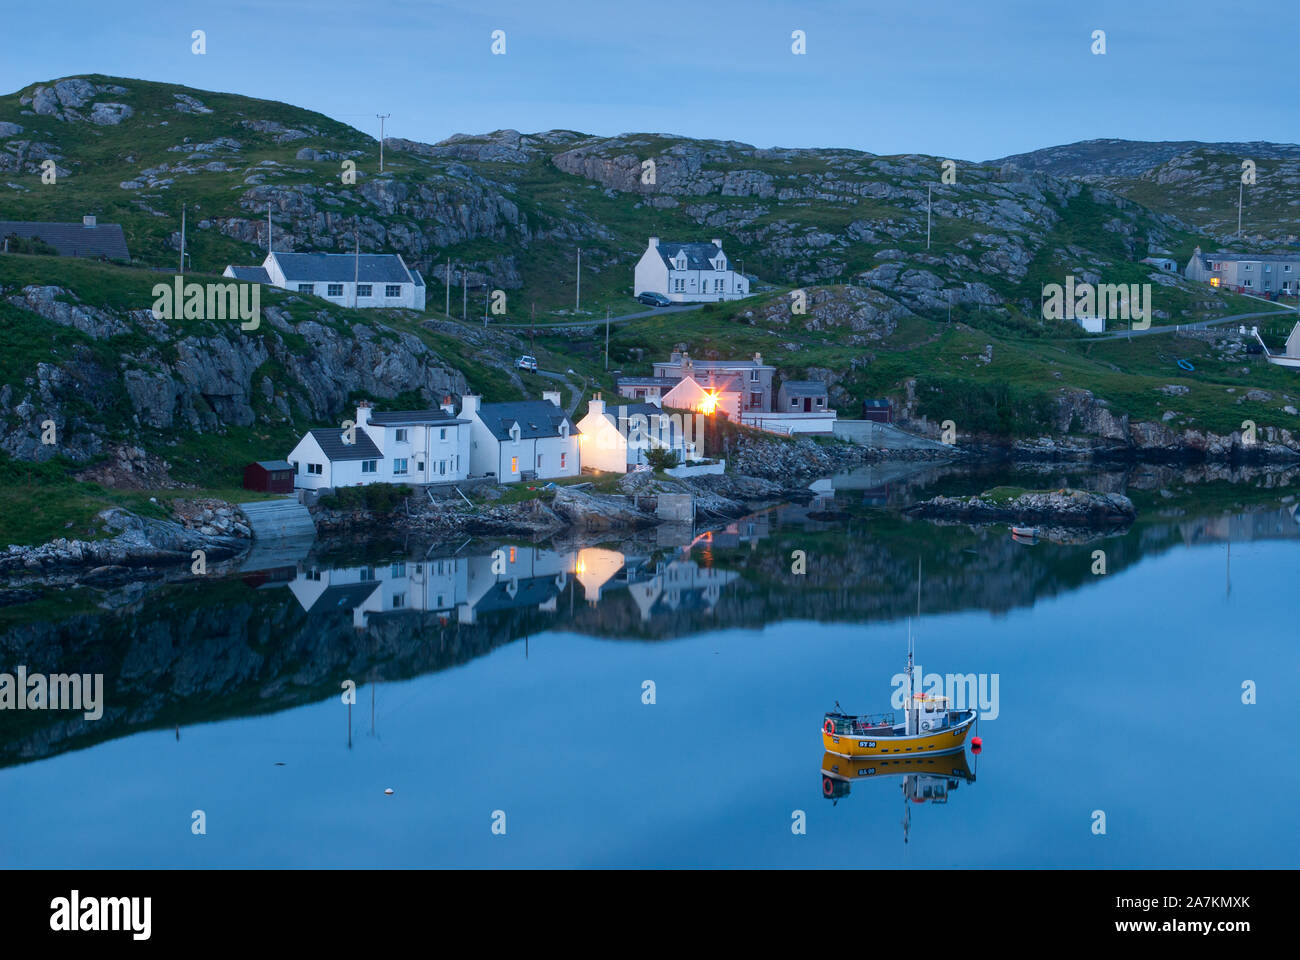 Fishing village at twilight, Scalpay, Isle of Harris, Outer Hebrides, Scotland, UK. Stock Photo